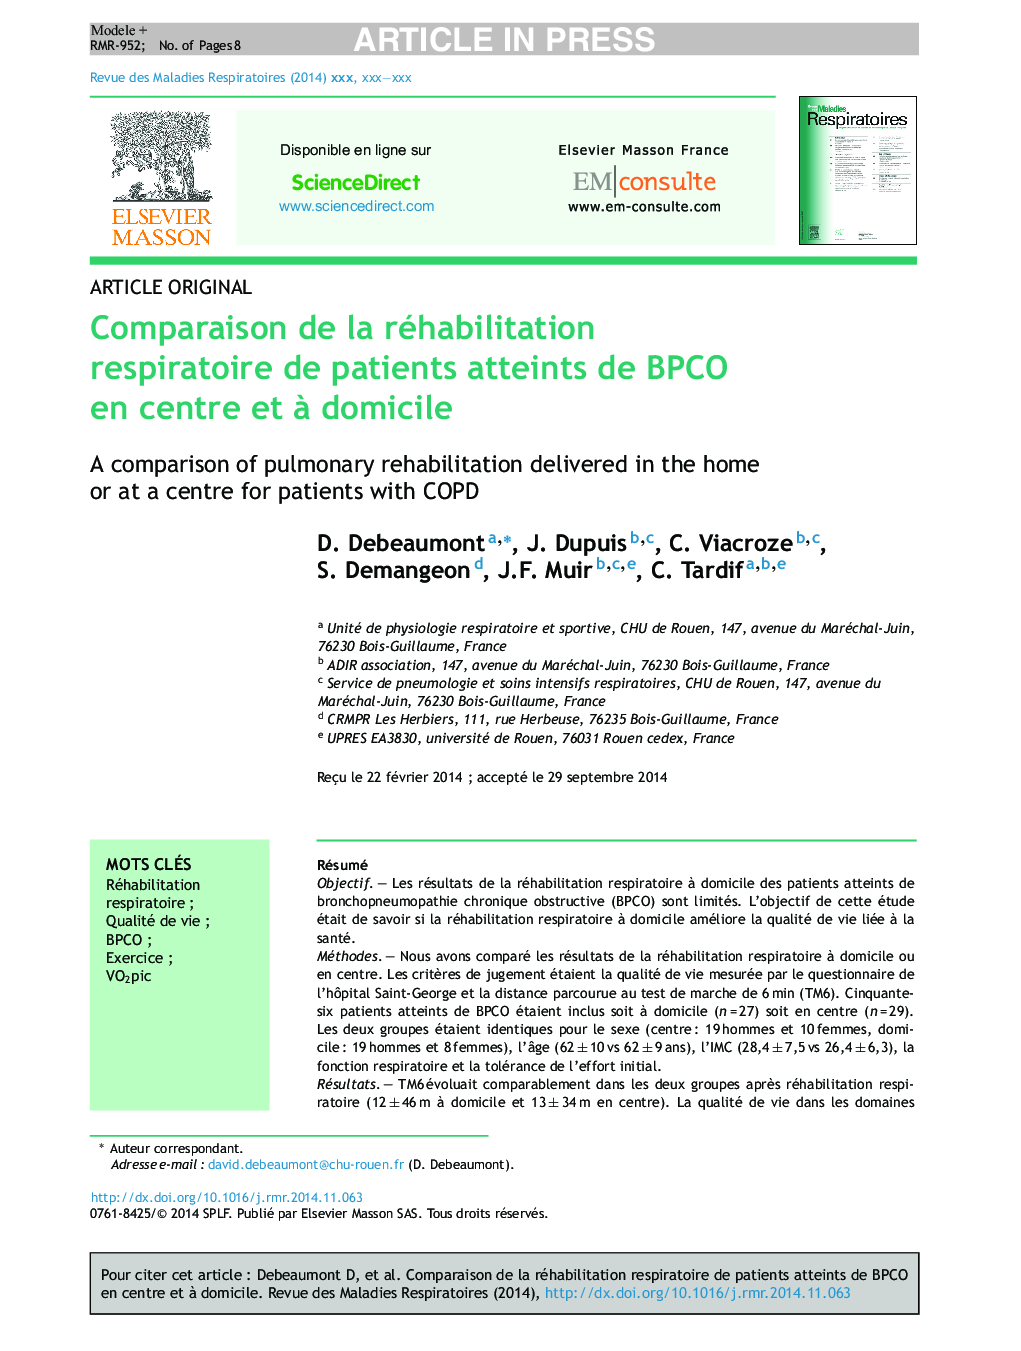 Comparaison de la réhabilitation respiratoire de patients atteints de BPCO en centre et Ã  domicile